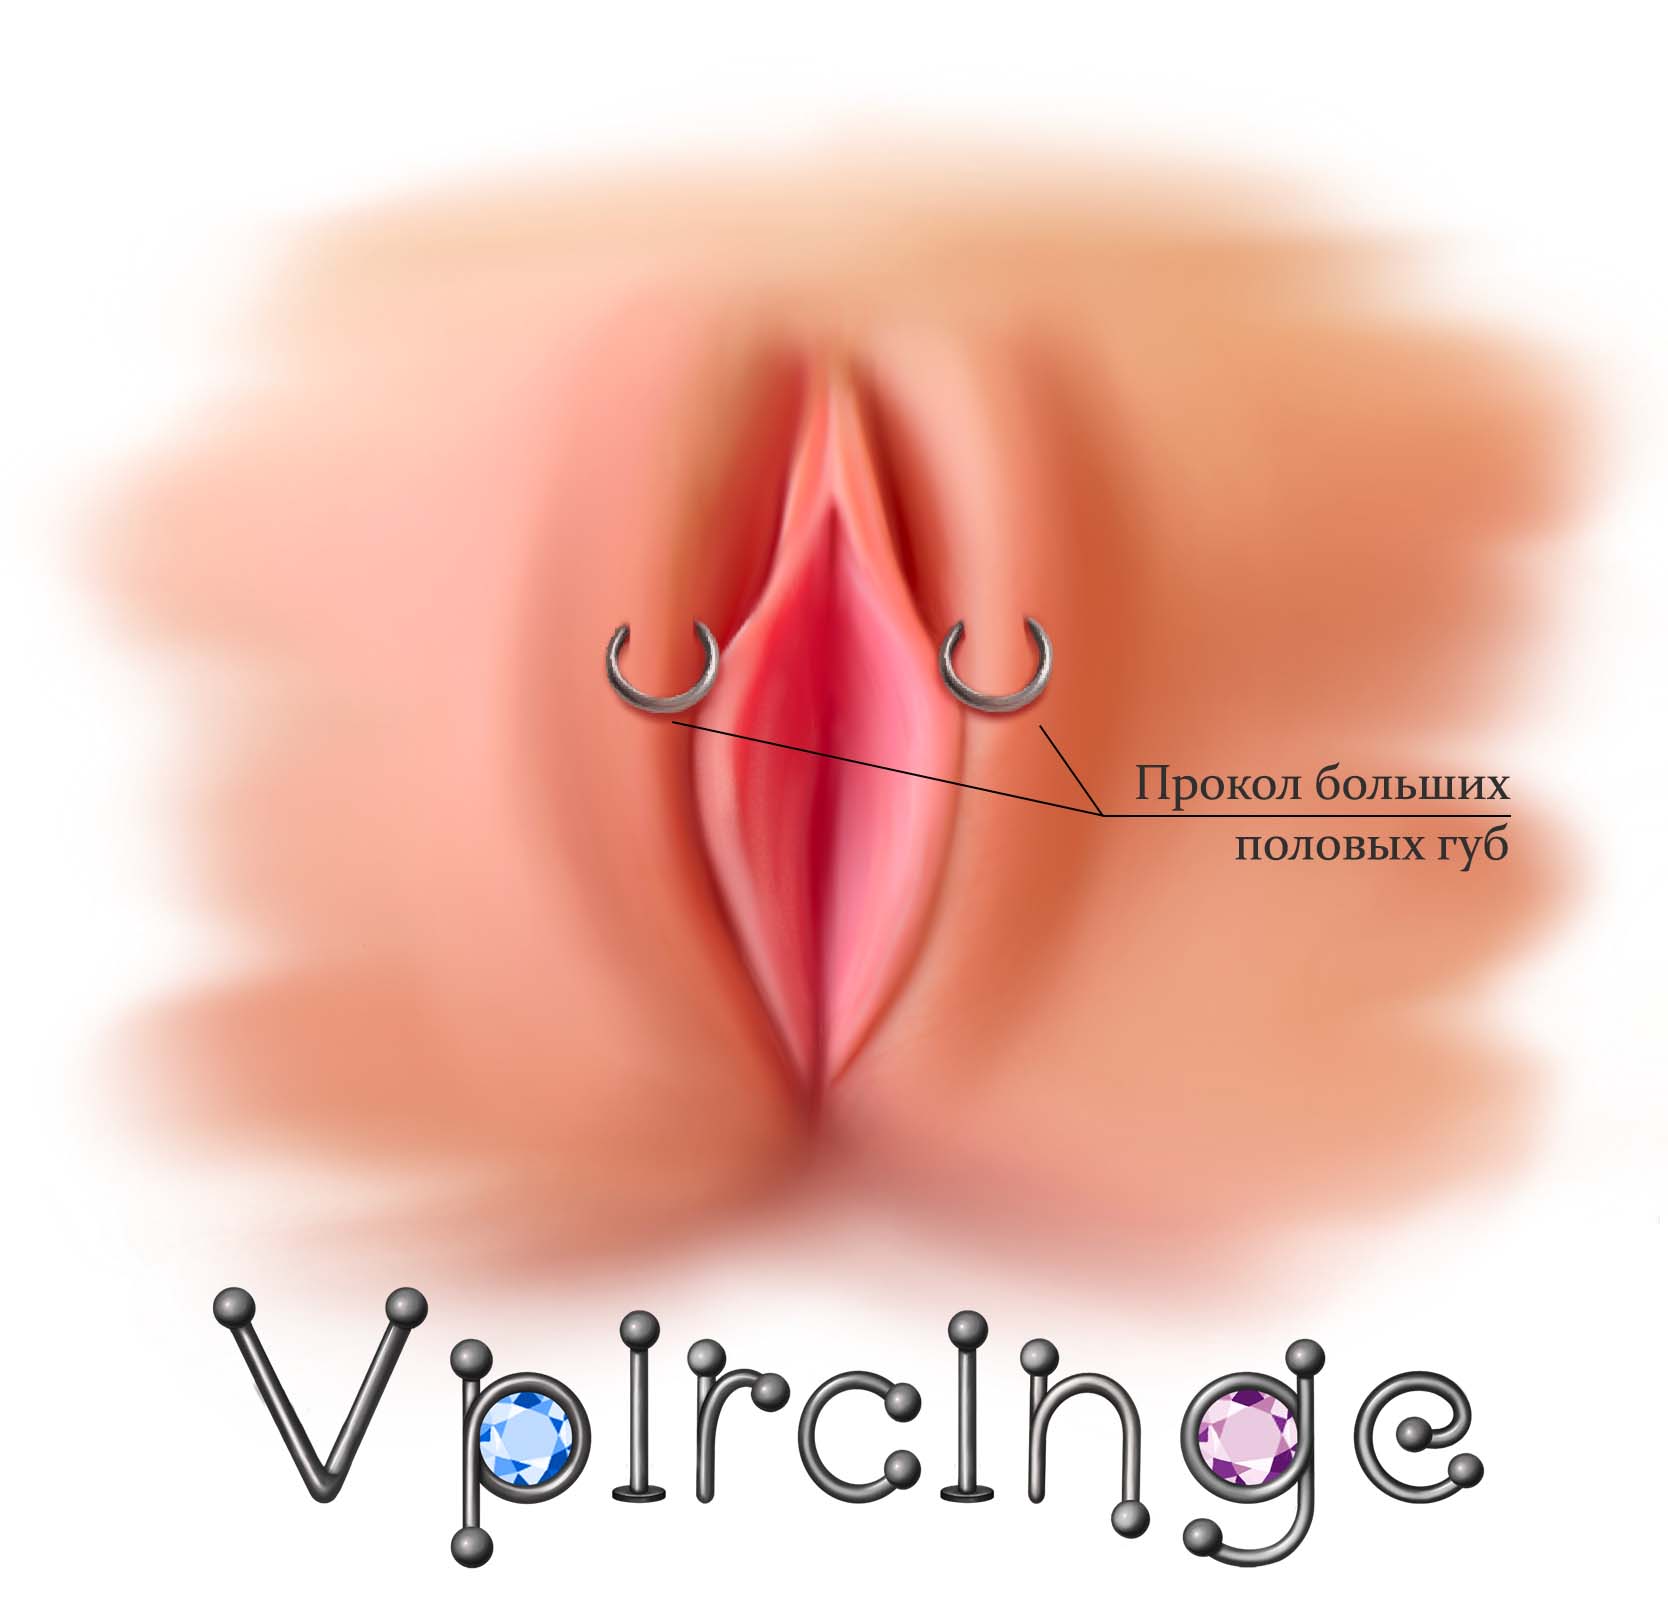 Пирсинг вагины ( видео). Релевантные порно видео пирсинг вагины смотреть на ХУЯМБА